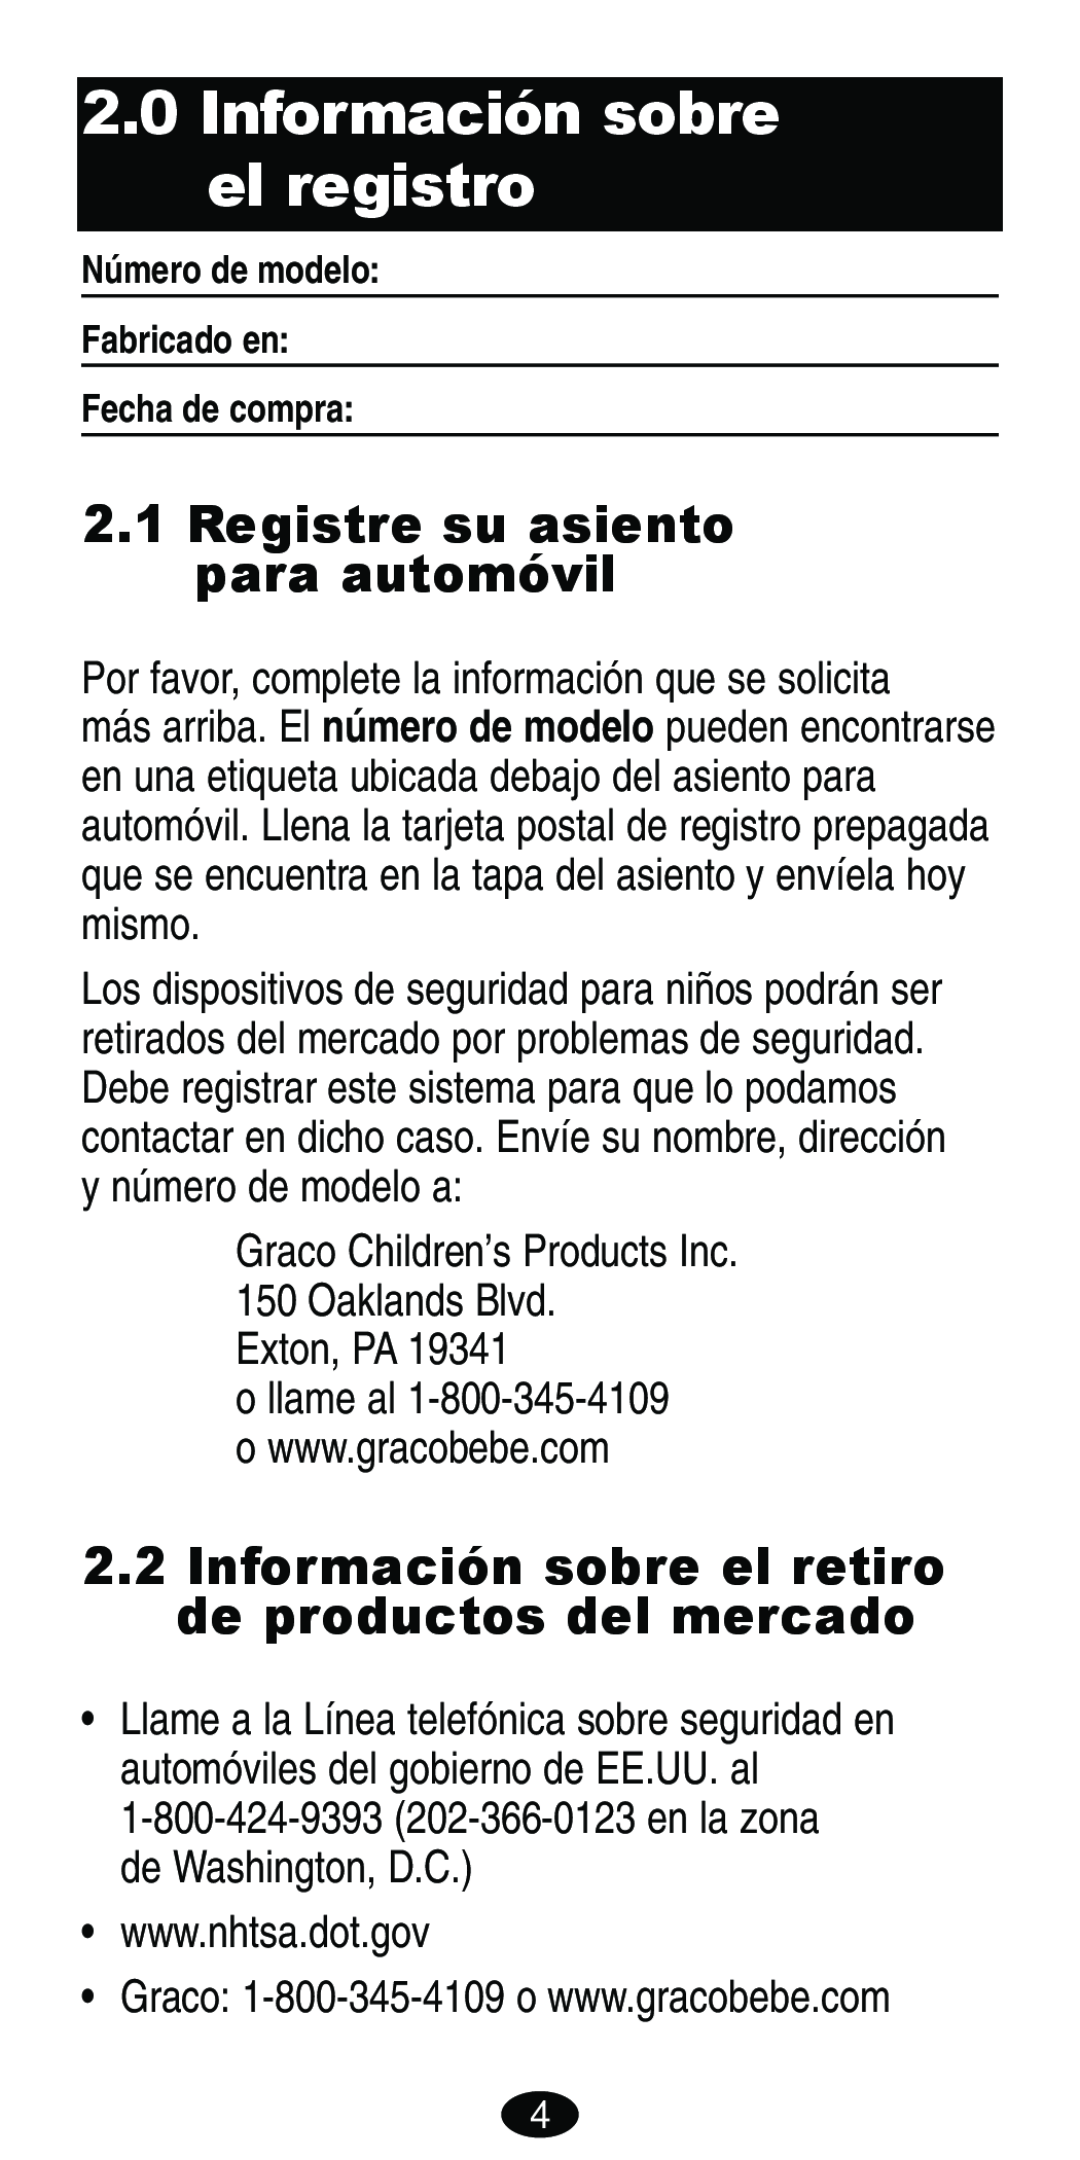 Graco Car Seat/Booster manual Información sobre el registro, Registre su asiento para automóvil 